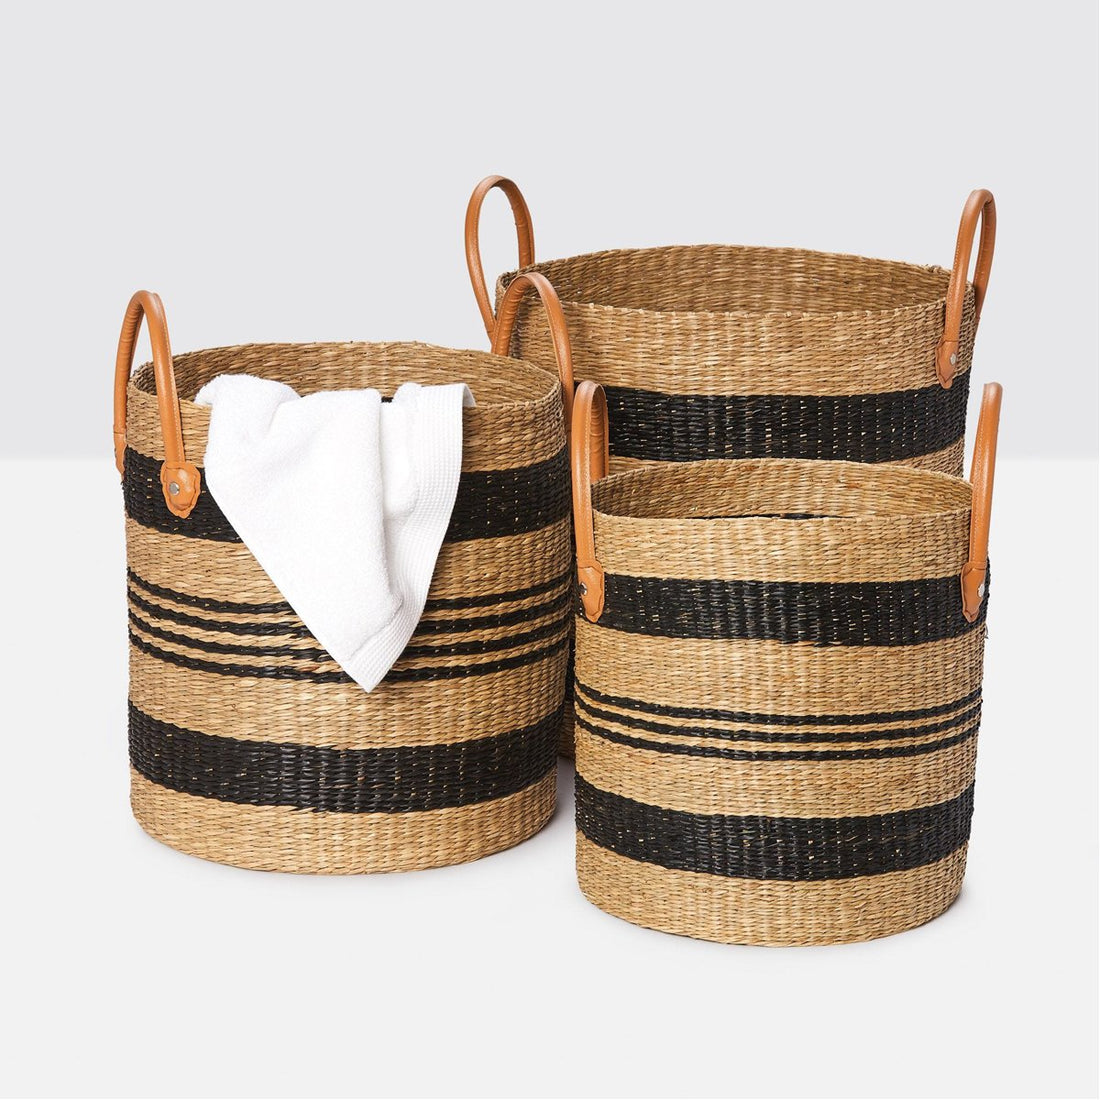 Black Weave Baskets with Lids, 3-Piece Set